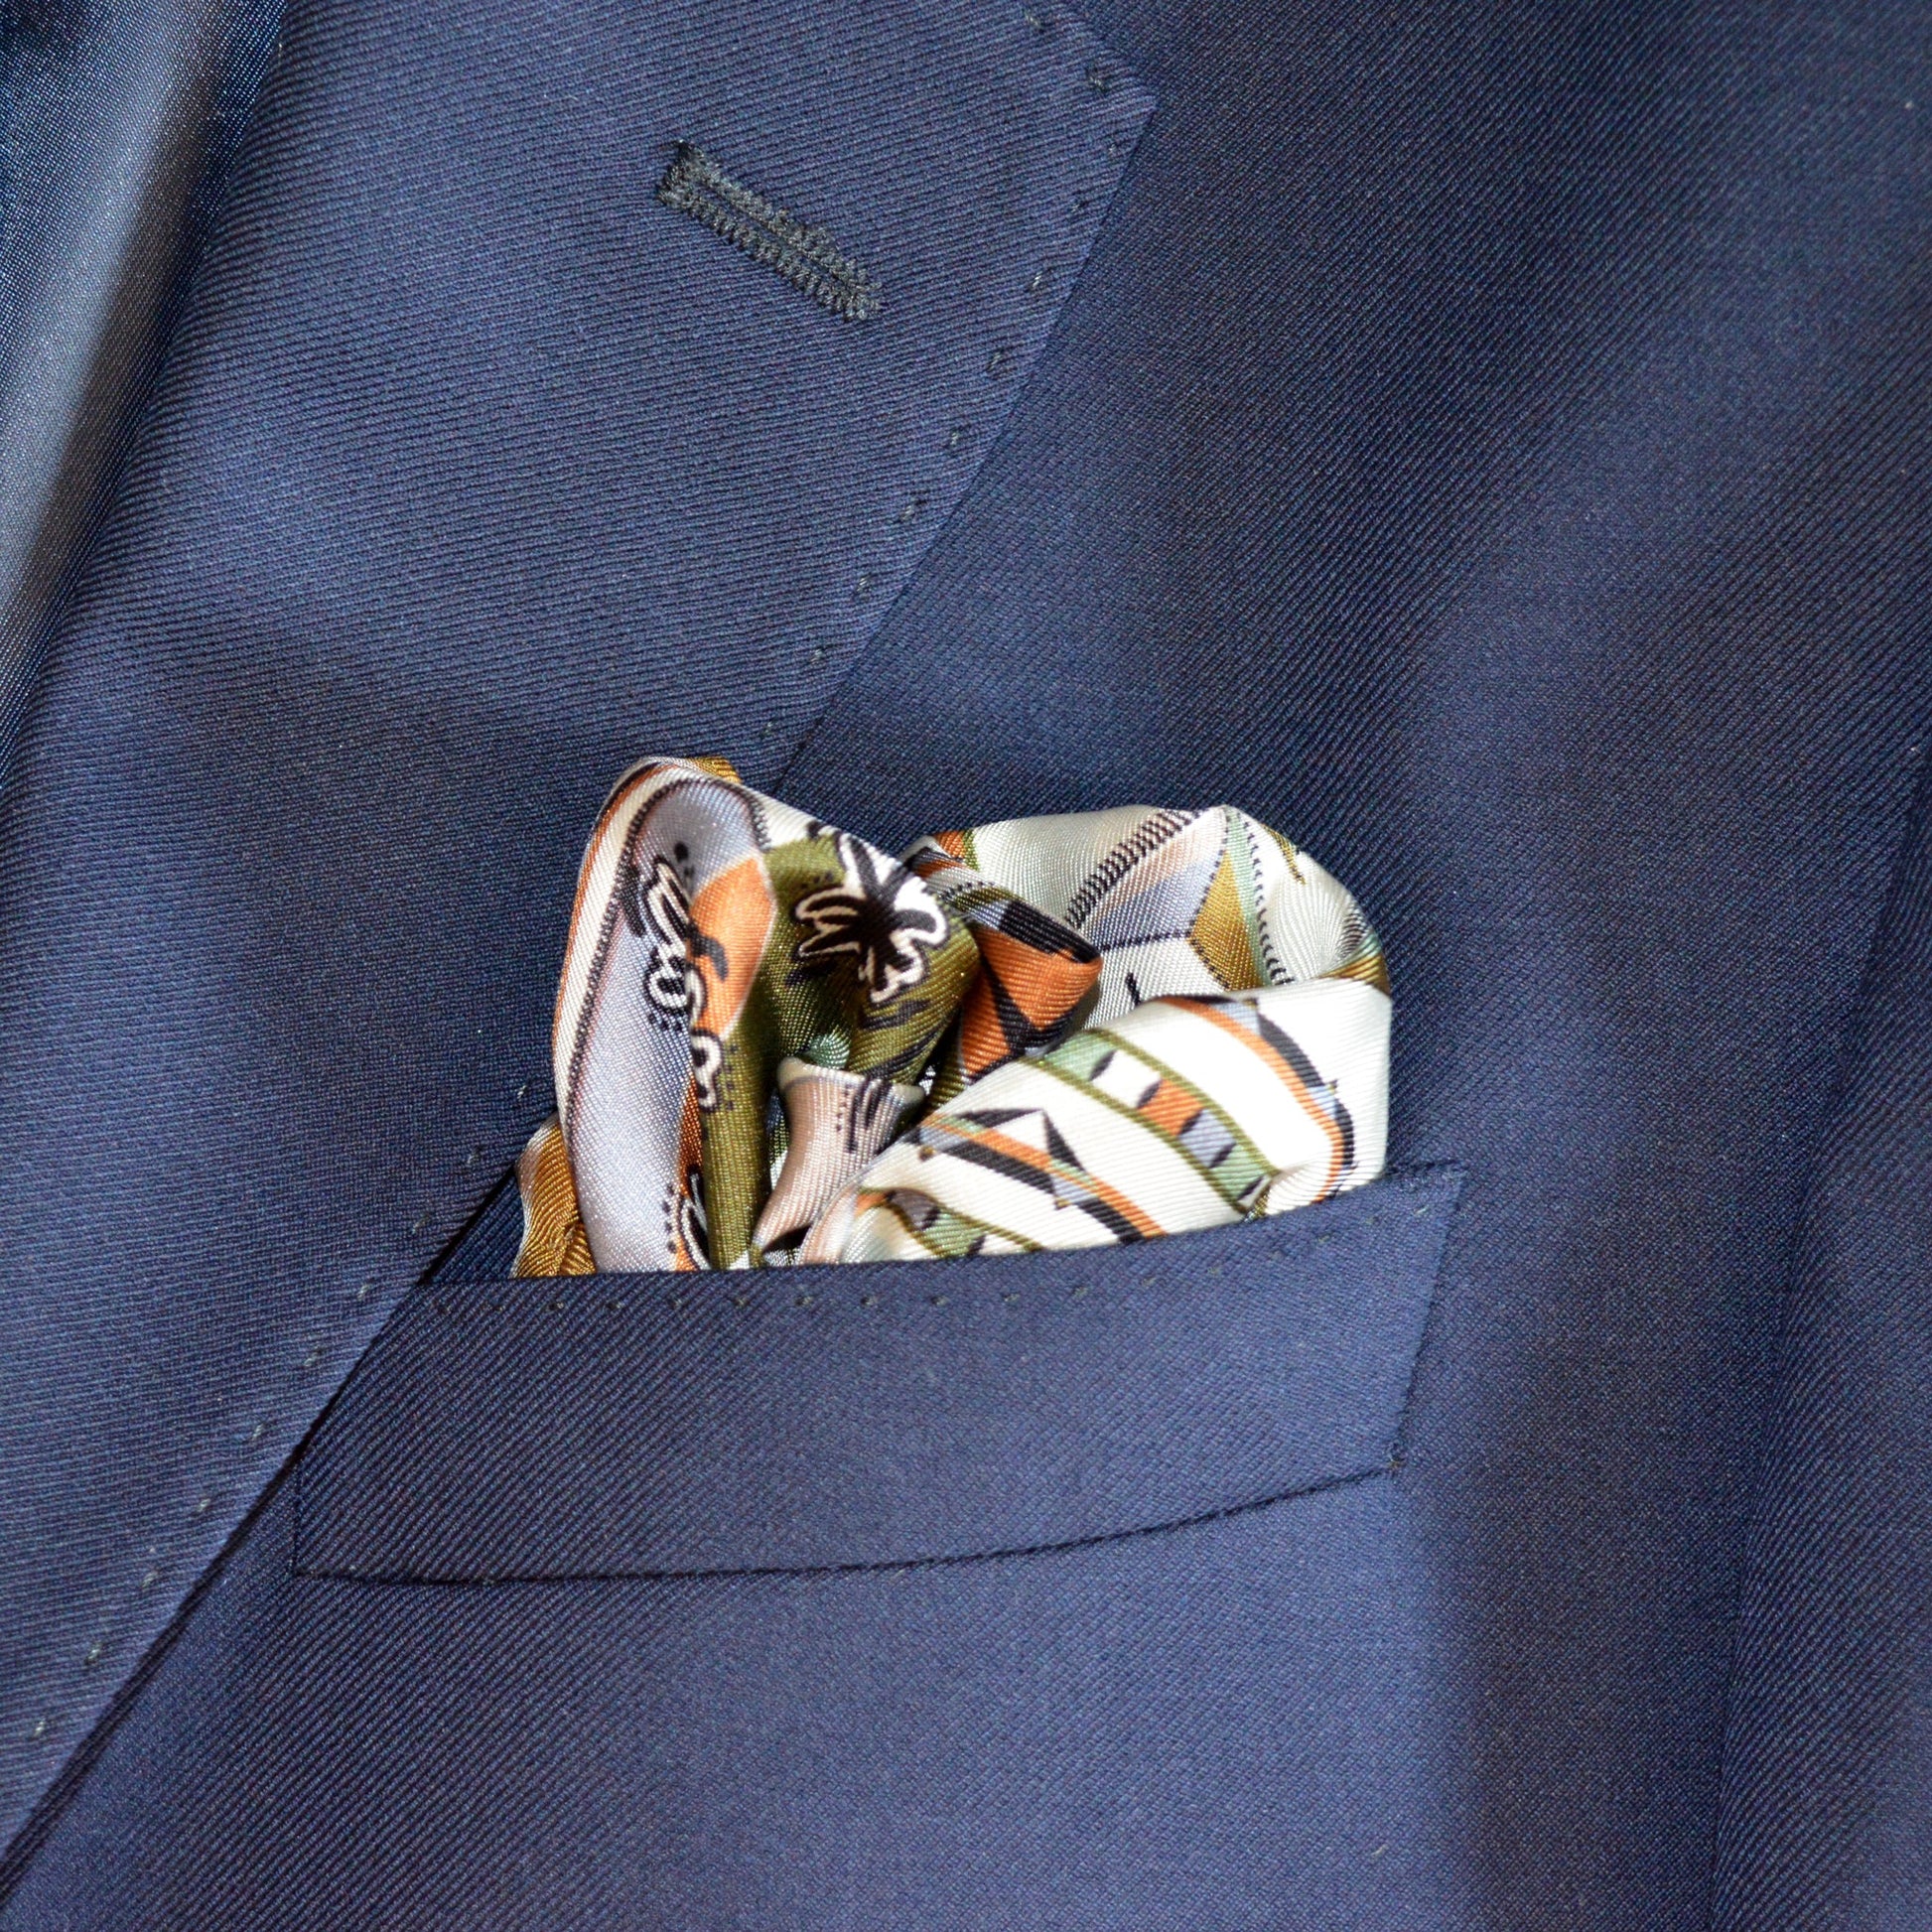 accessorio da gentleman inserito in tasca da blazer da abbinare con stile